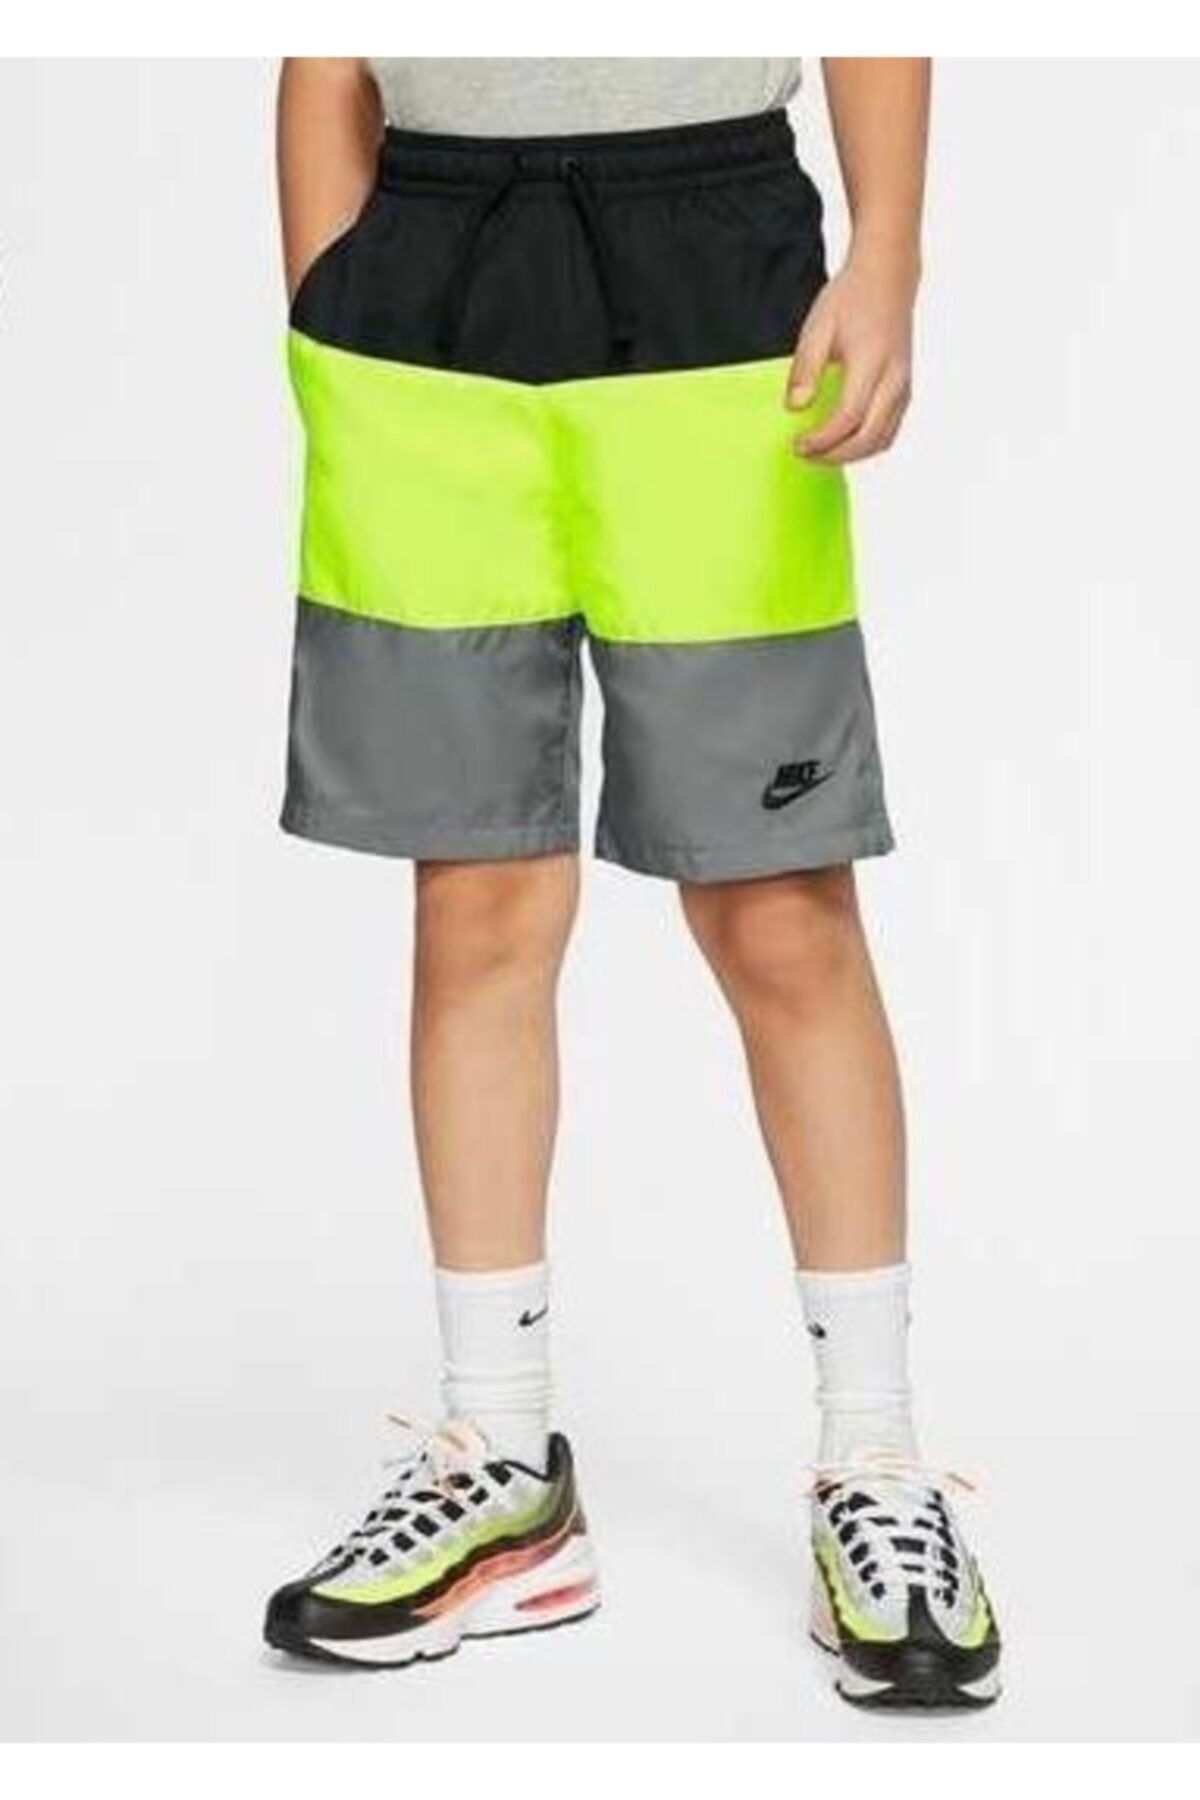 Nike Çocuk Şort Siyah Yeşil Havuz Ve Deniz Şortu